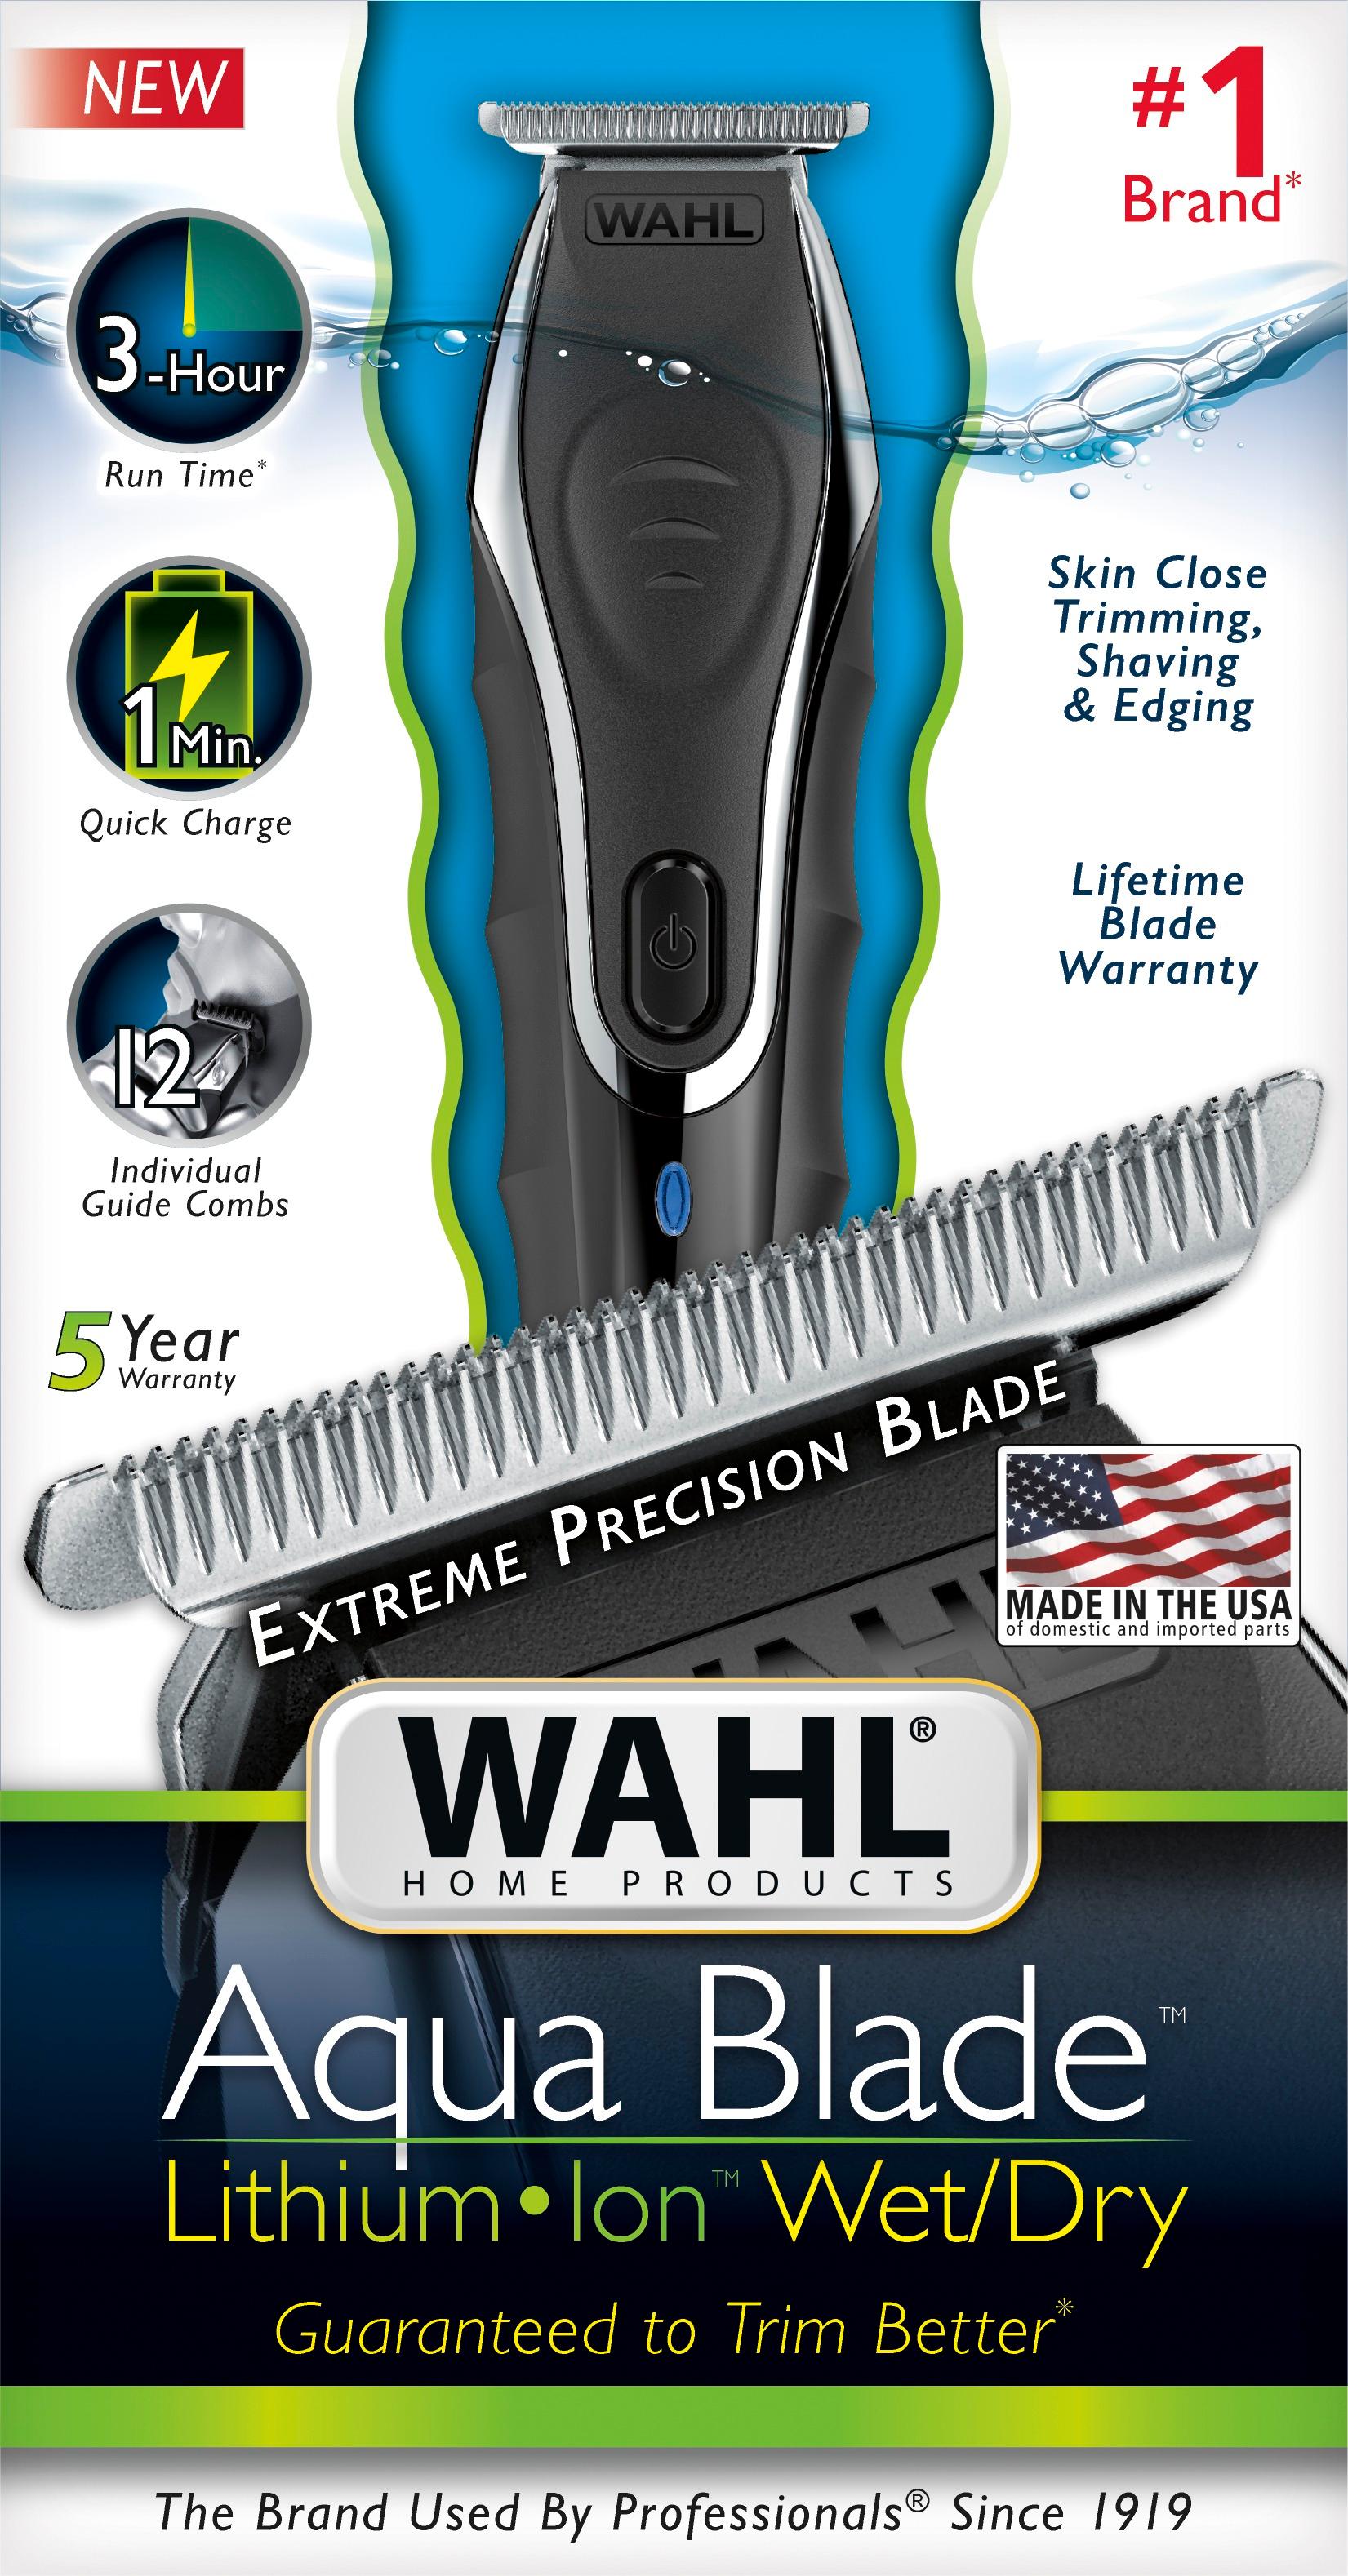 wahl waterproof trimmer